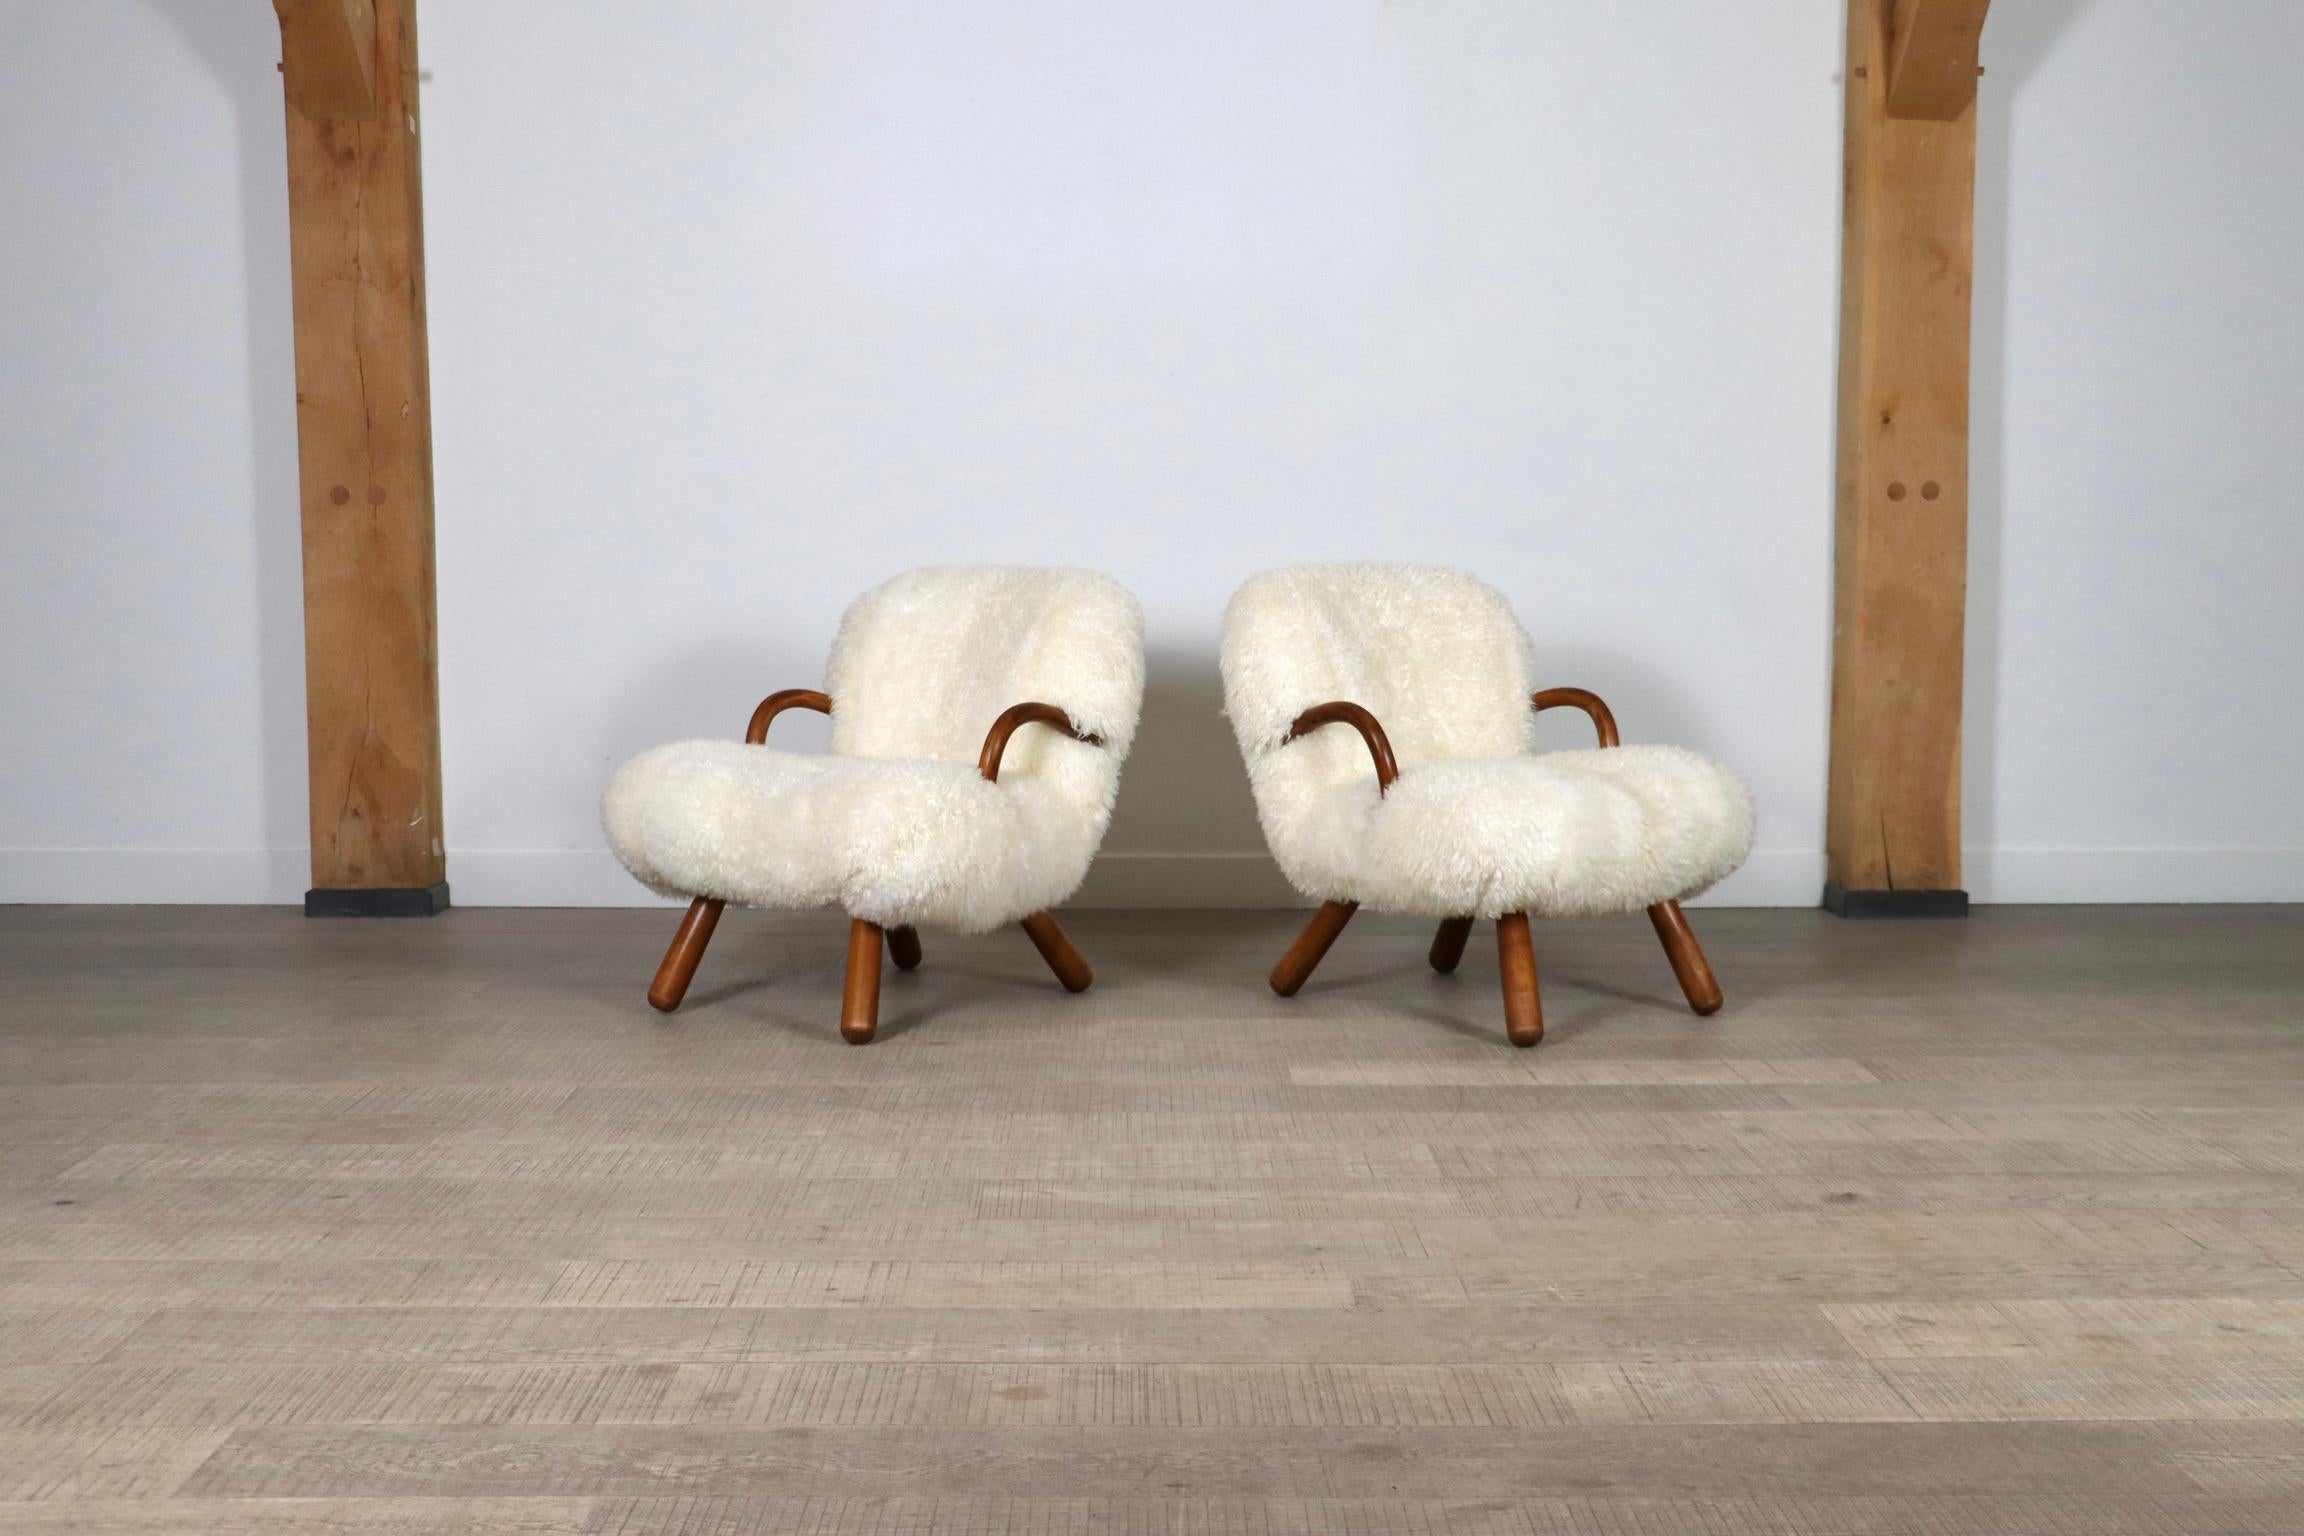 Fantastisches Paar Clam-Stühle aus einer frühen Auflage, die 1944 in Kopenhagen für Madsen und Schubell entworfen wurden und seither zu einer Ikone des dänischen modernen Designs geworden sind.

Viele Jahre lang wurde der wahre Designer dieses